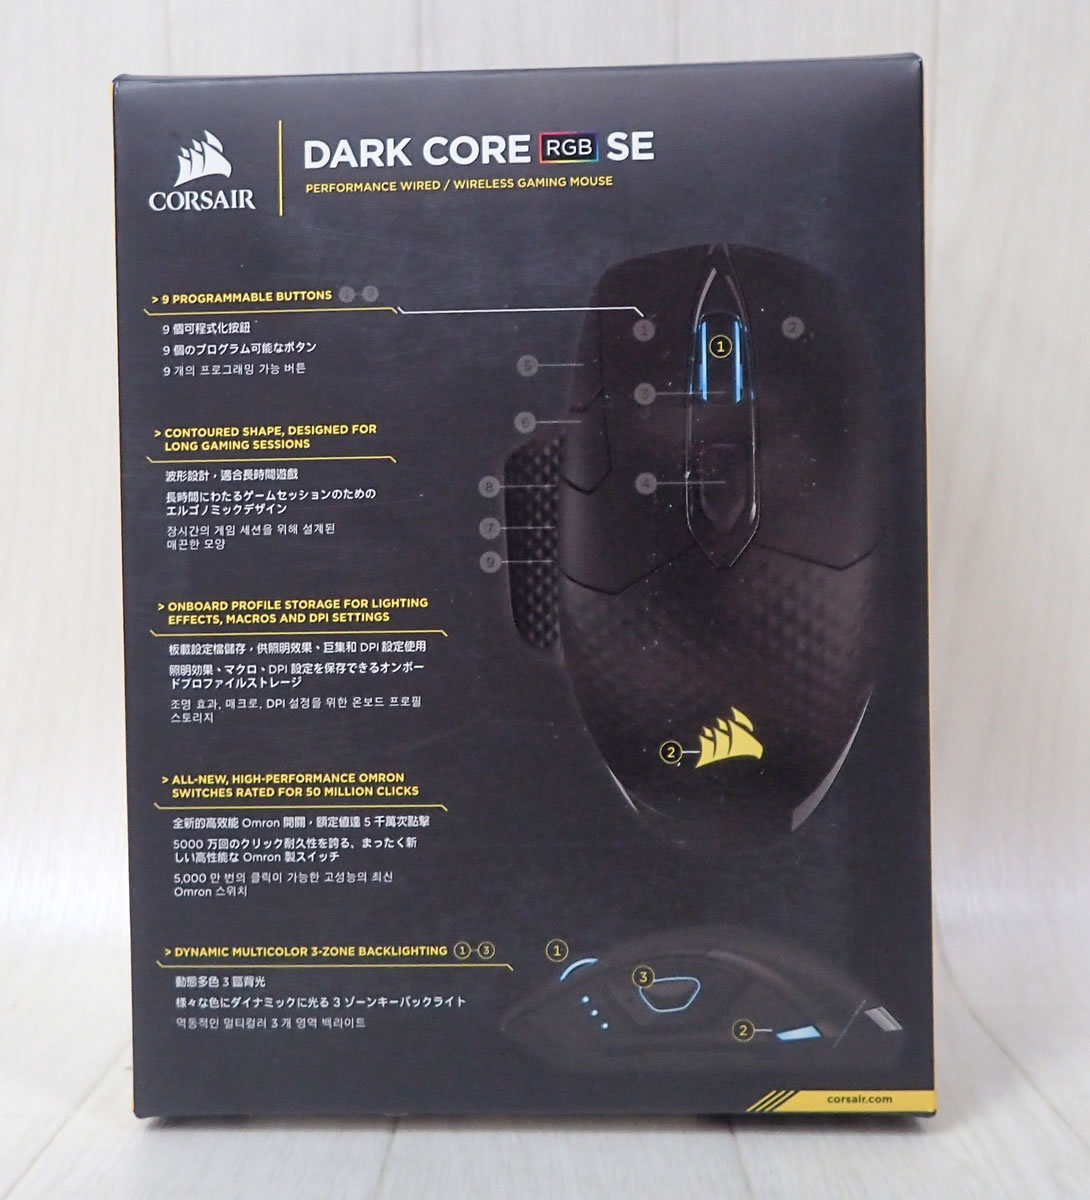  проводной беспроводной Bluetooth прекрасный товар Corse aCORSAIR DARK CORE RGB SE CH-9315111-AP беспроводной ge-ming мышь отправка 520 иен ~